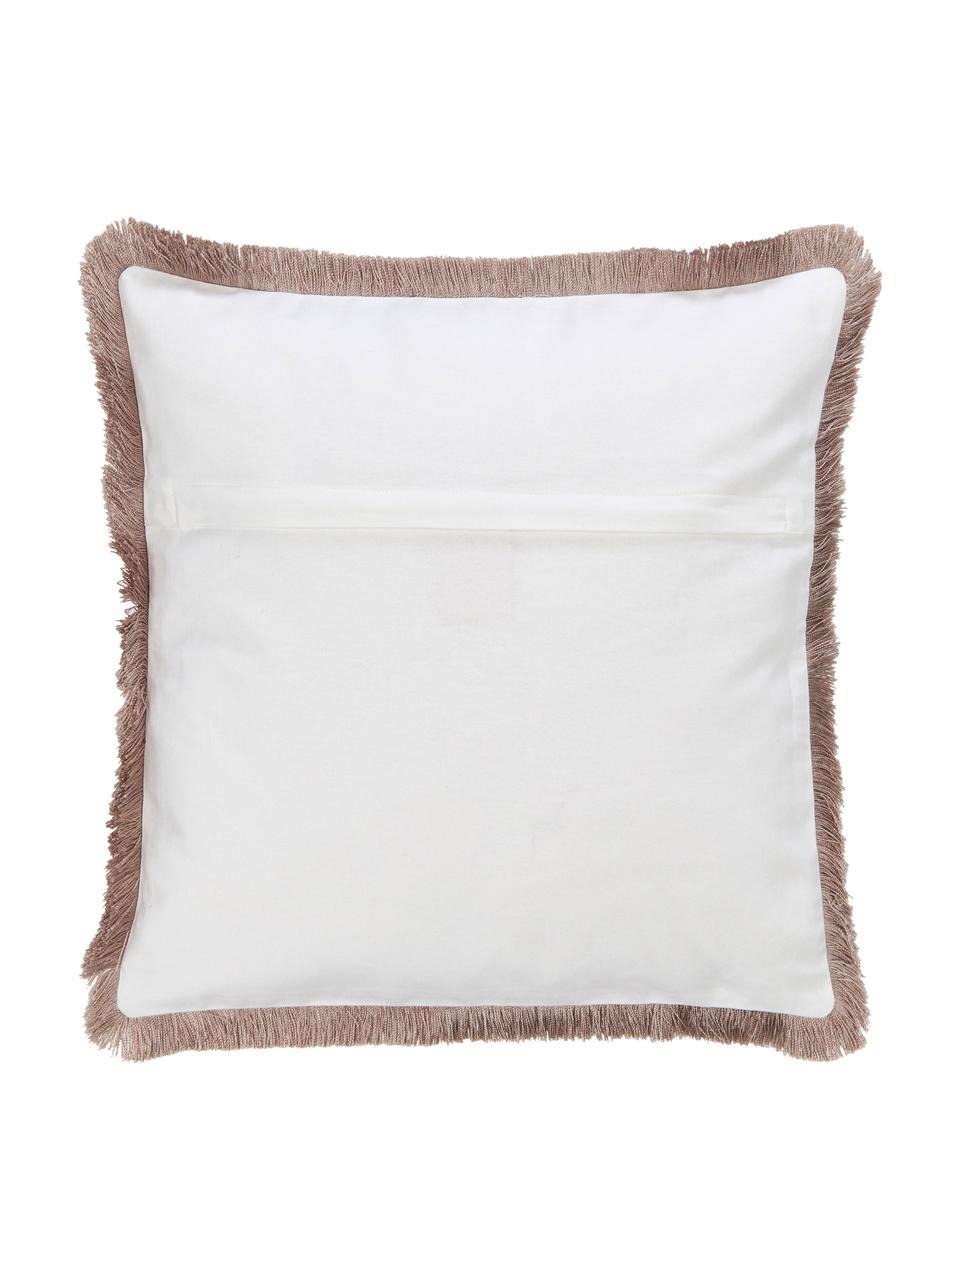 Poszewka na poduszkę z bawełny organicznej Maila, 100% bawełna organiczna z certyfikatem GOTS, Biały, beżowy, S 45 x D 45 cm